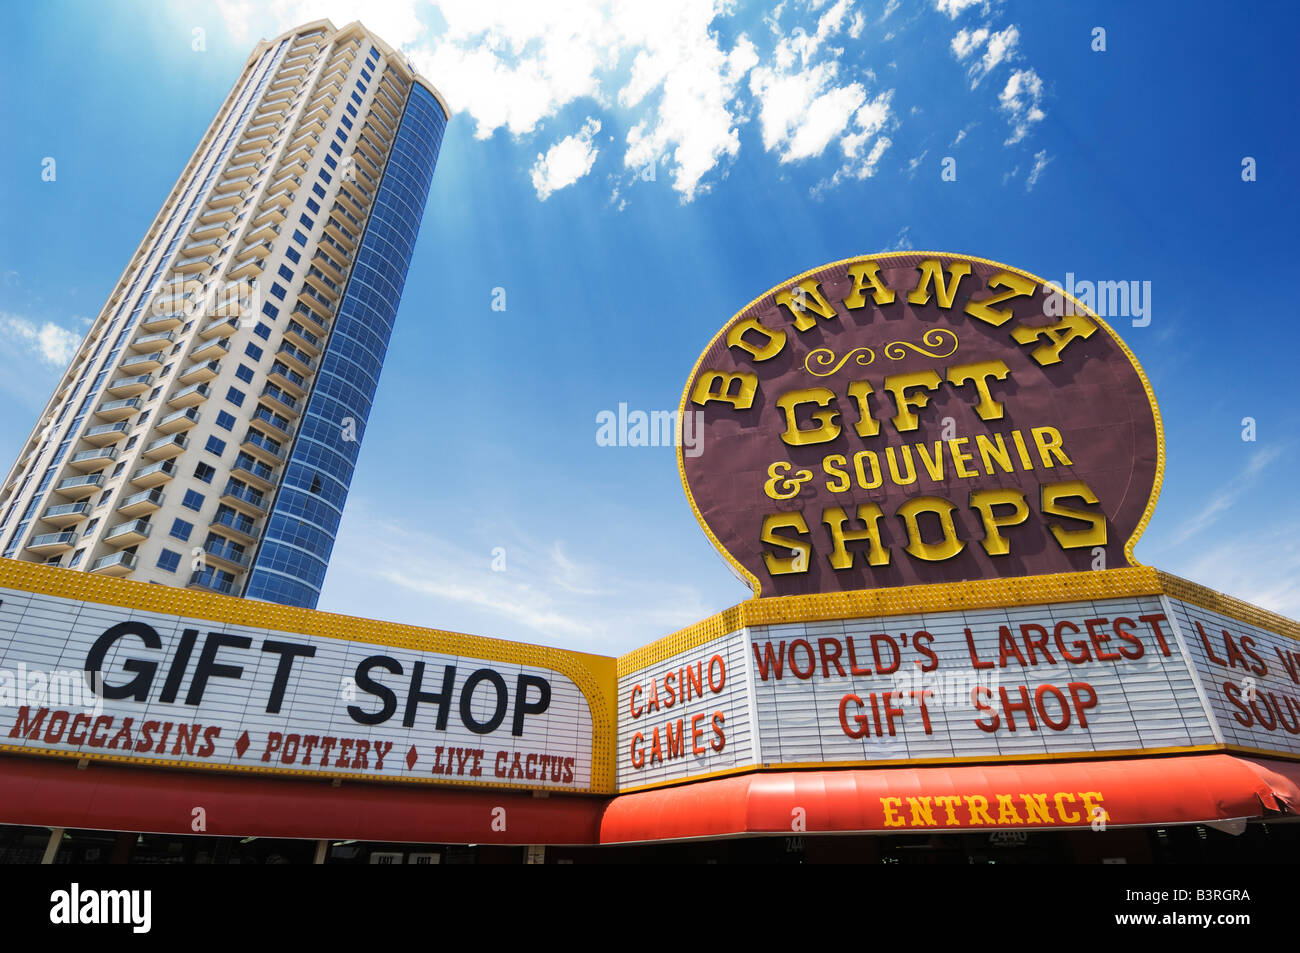 Bonanza-Geschenk-Shop - größte Worled. Las Vegas. Stockfoto